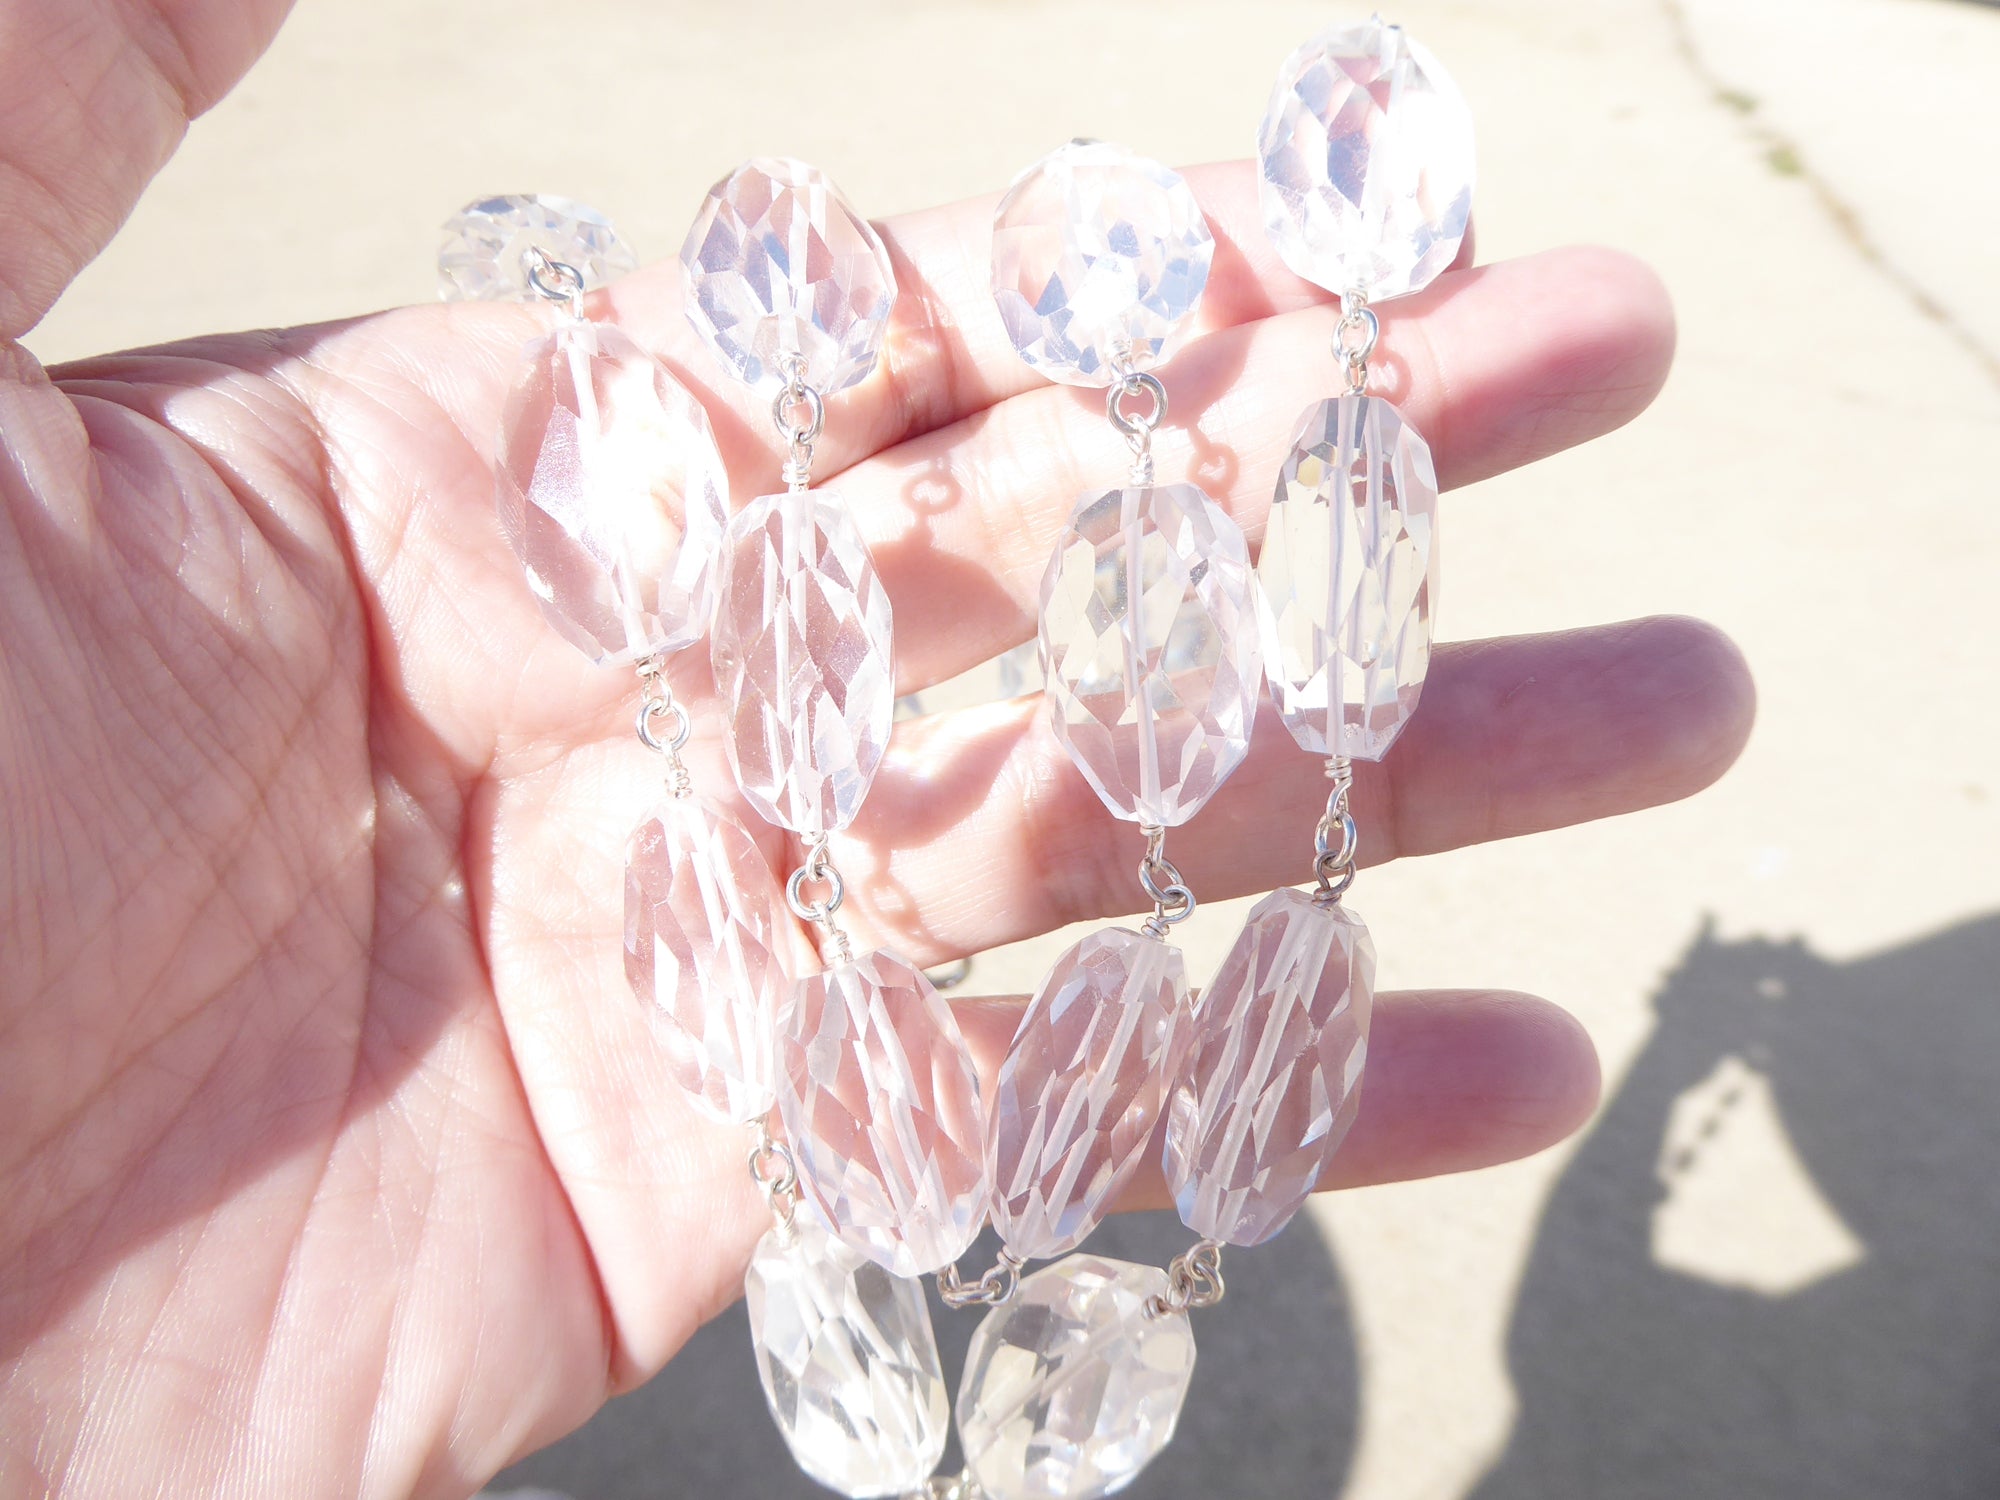 Rock crystal necklace by Jenny Dayco 8